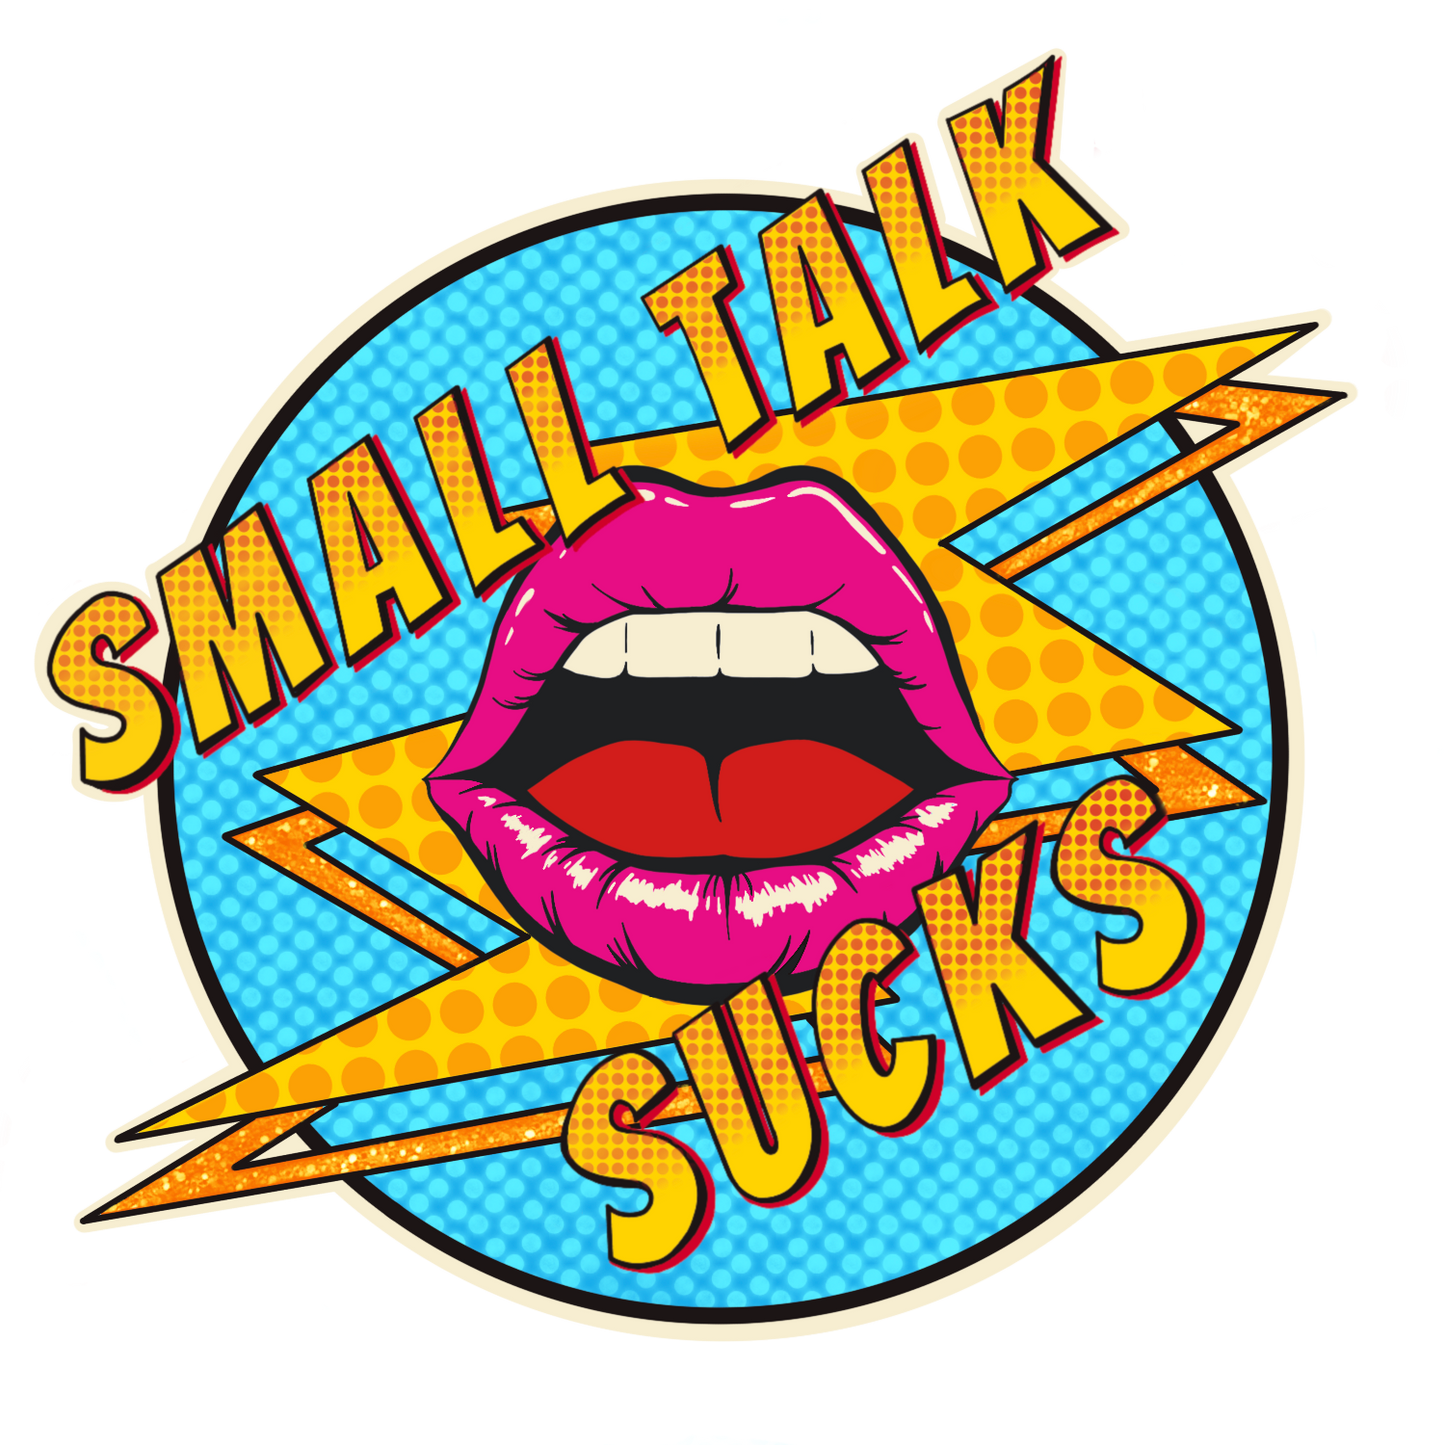 Small Talk Sucks